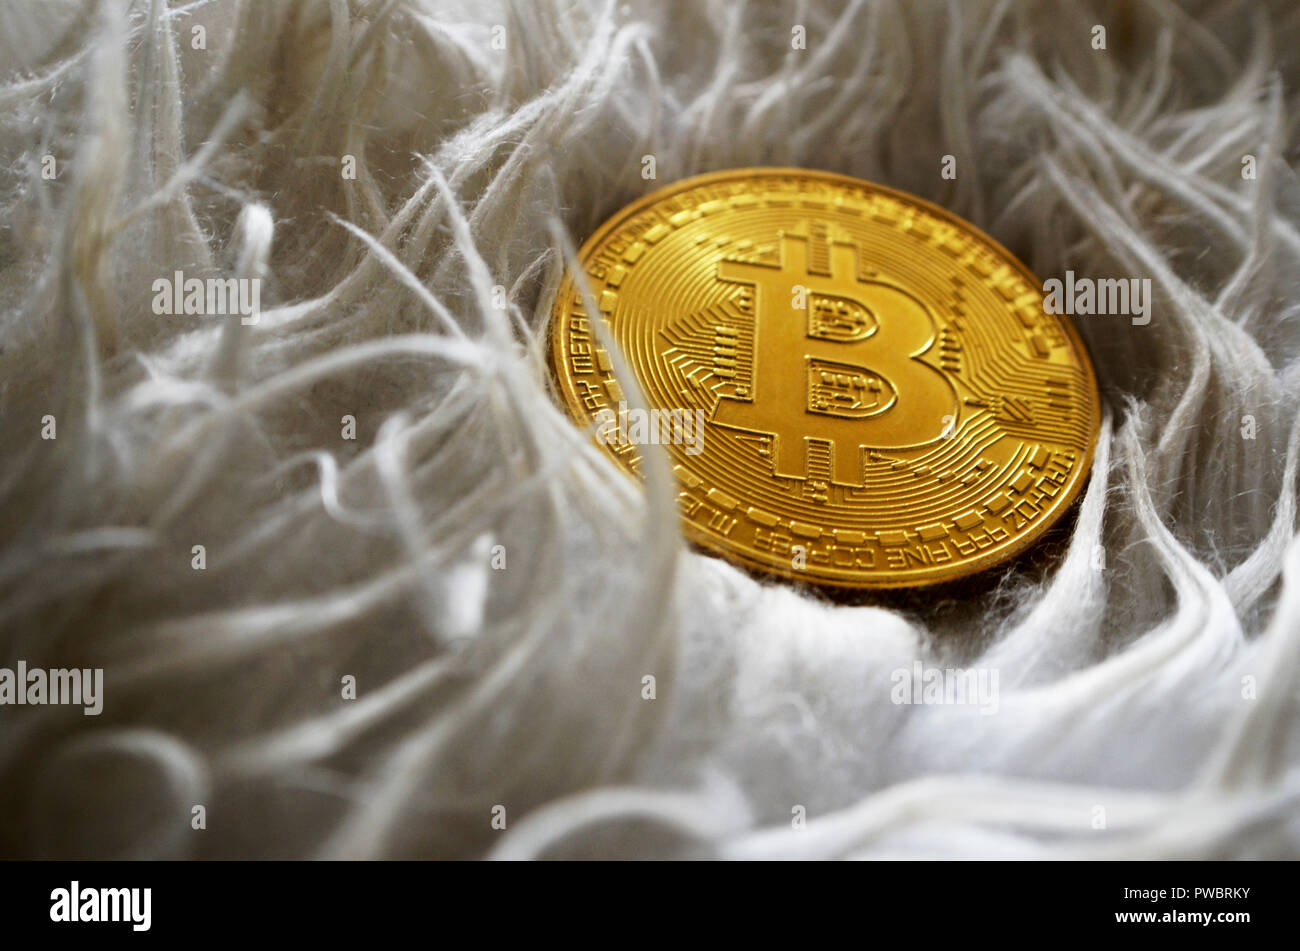 Bitcoin closeup on white background Stock Photo